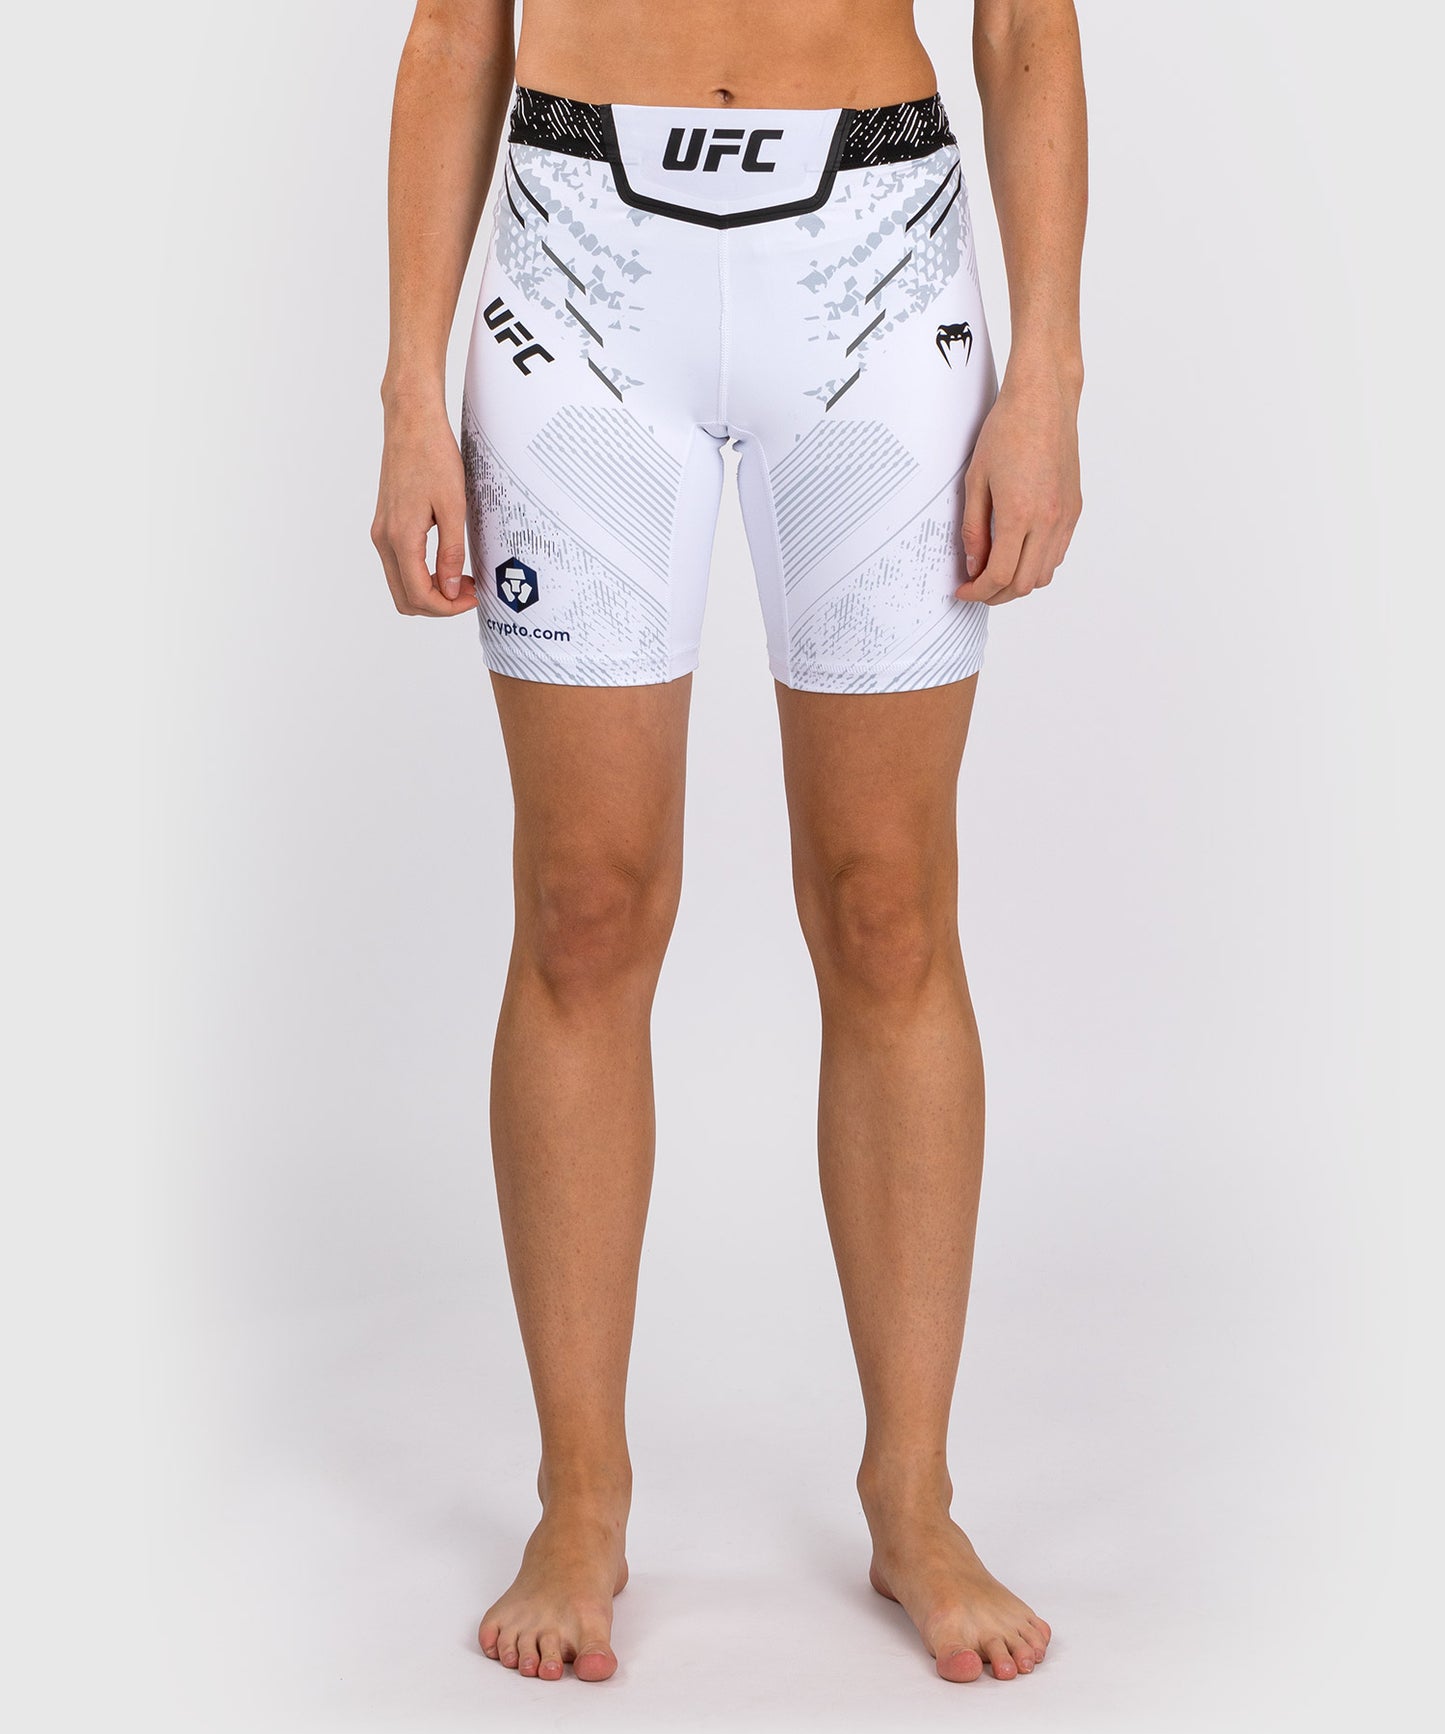 UFC Adrenaline by Venum Authentic Fight Night Vale Tudo Short für Frauen - Lange Passform - Weiß